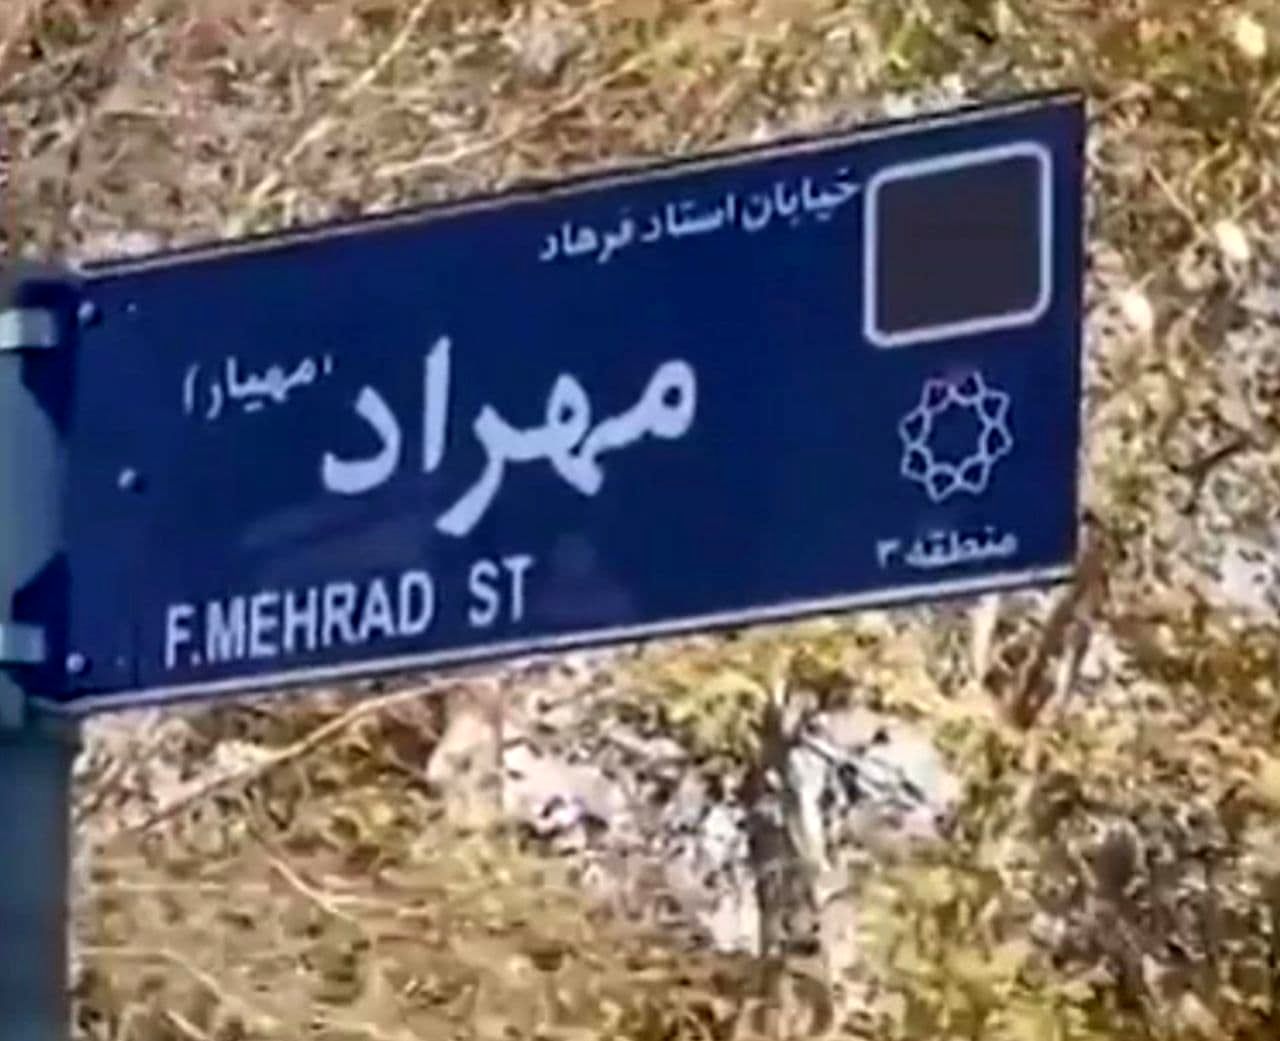   خیابانی در تهران به نام خواننده ای که هرگز اجازه برگزاری کنسرت به او ندادند! 

